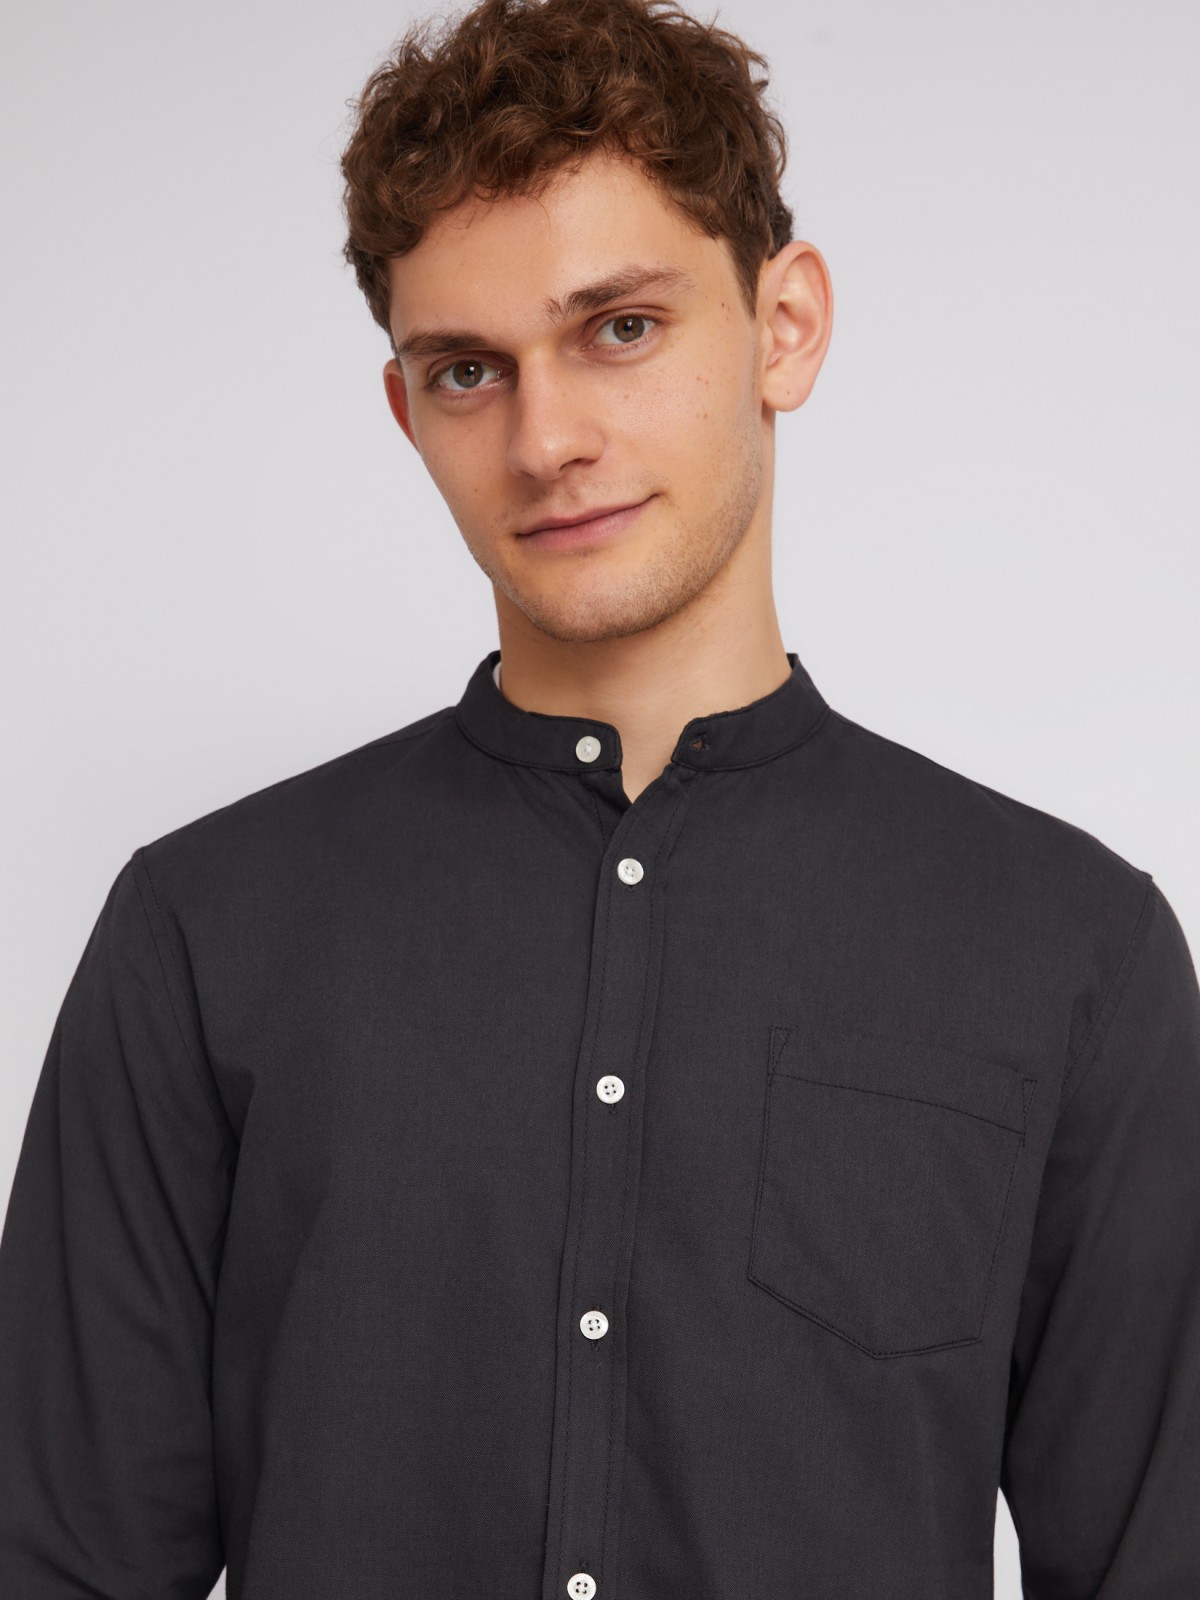 Офисная рубашка с воротником-стойкой и длинным рукавом zolla 21232214R043, цвет черный, размер S - фото 3